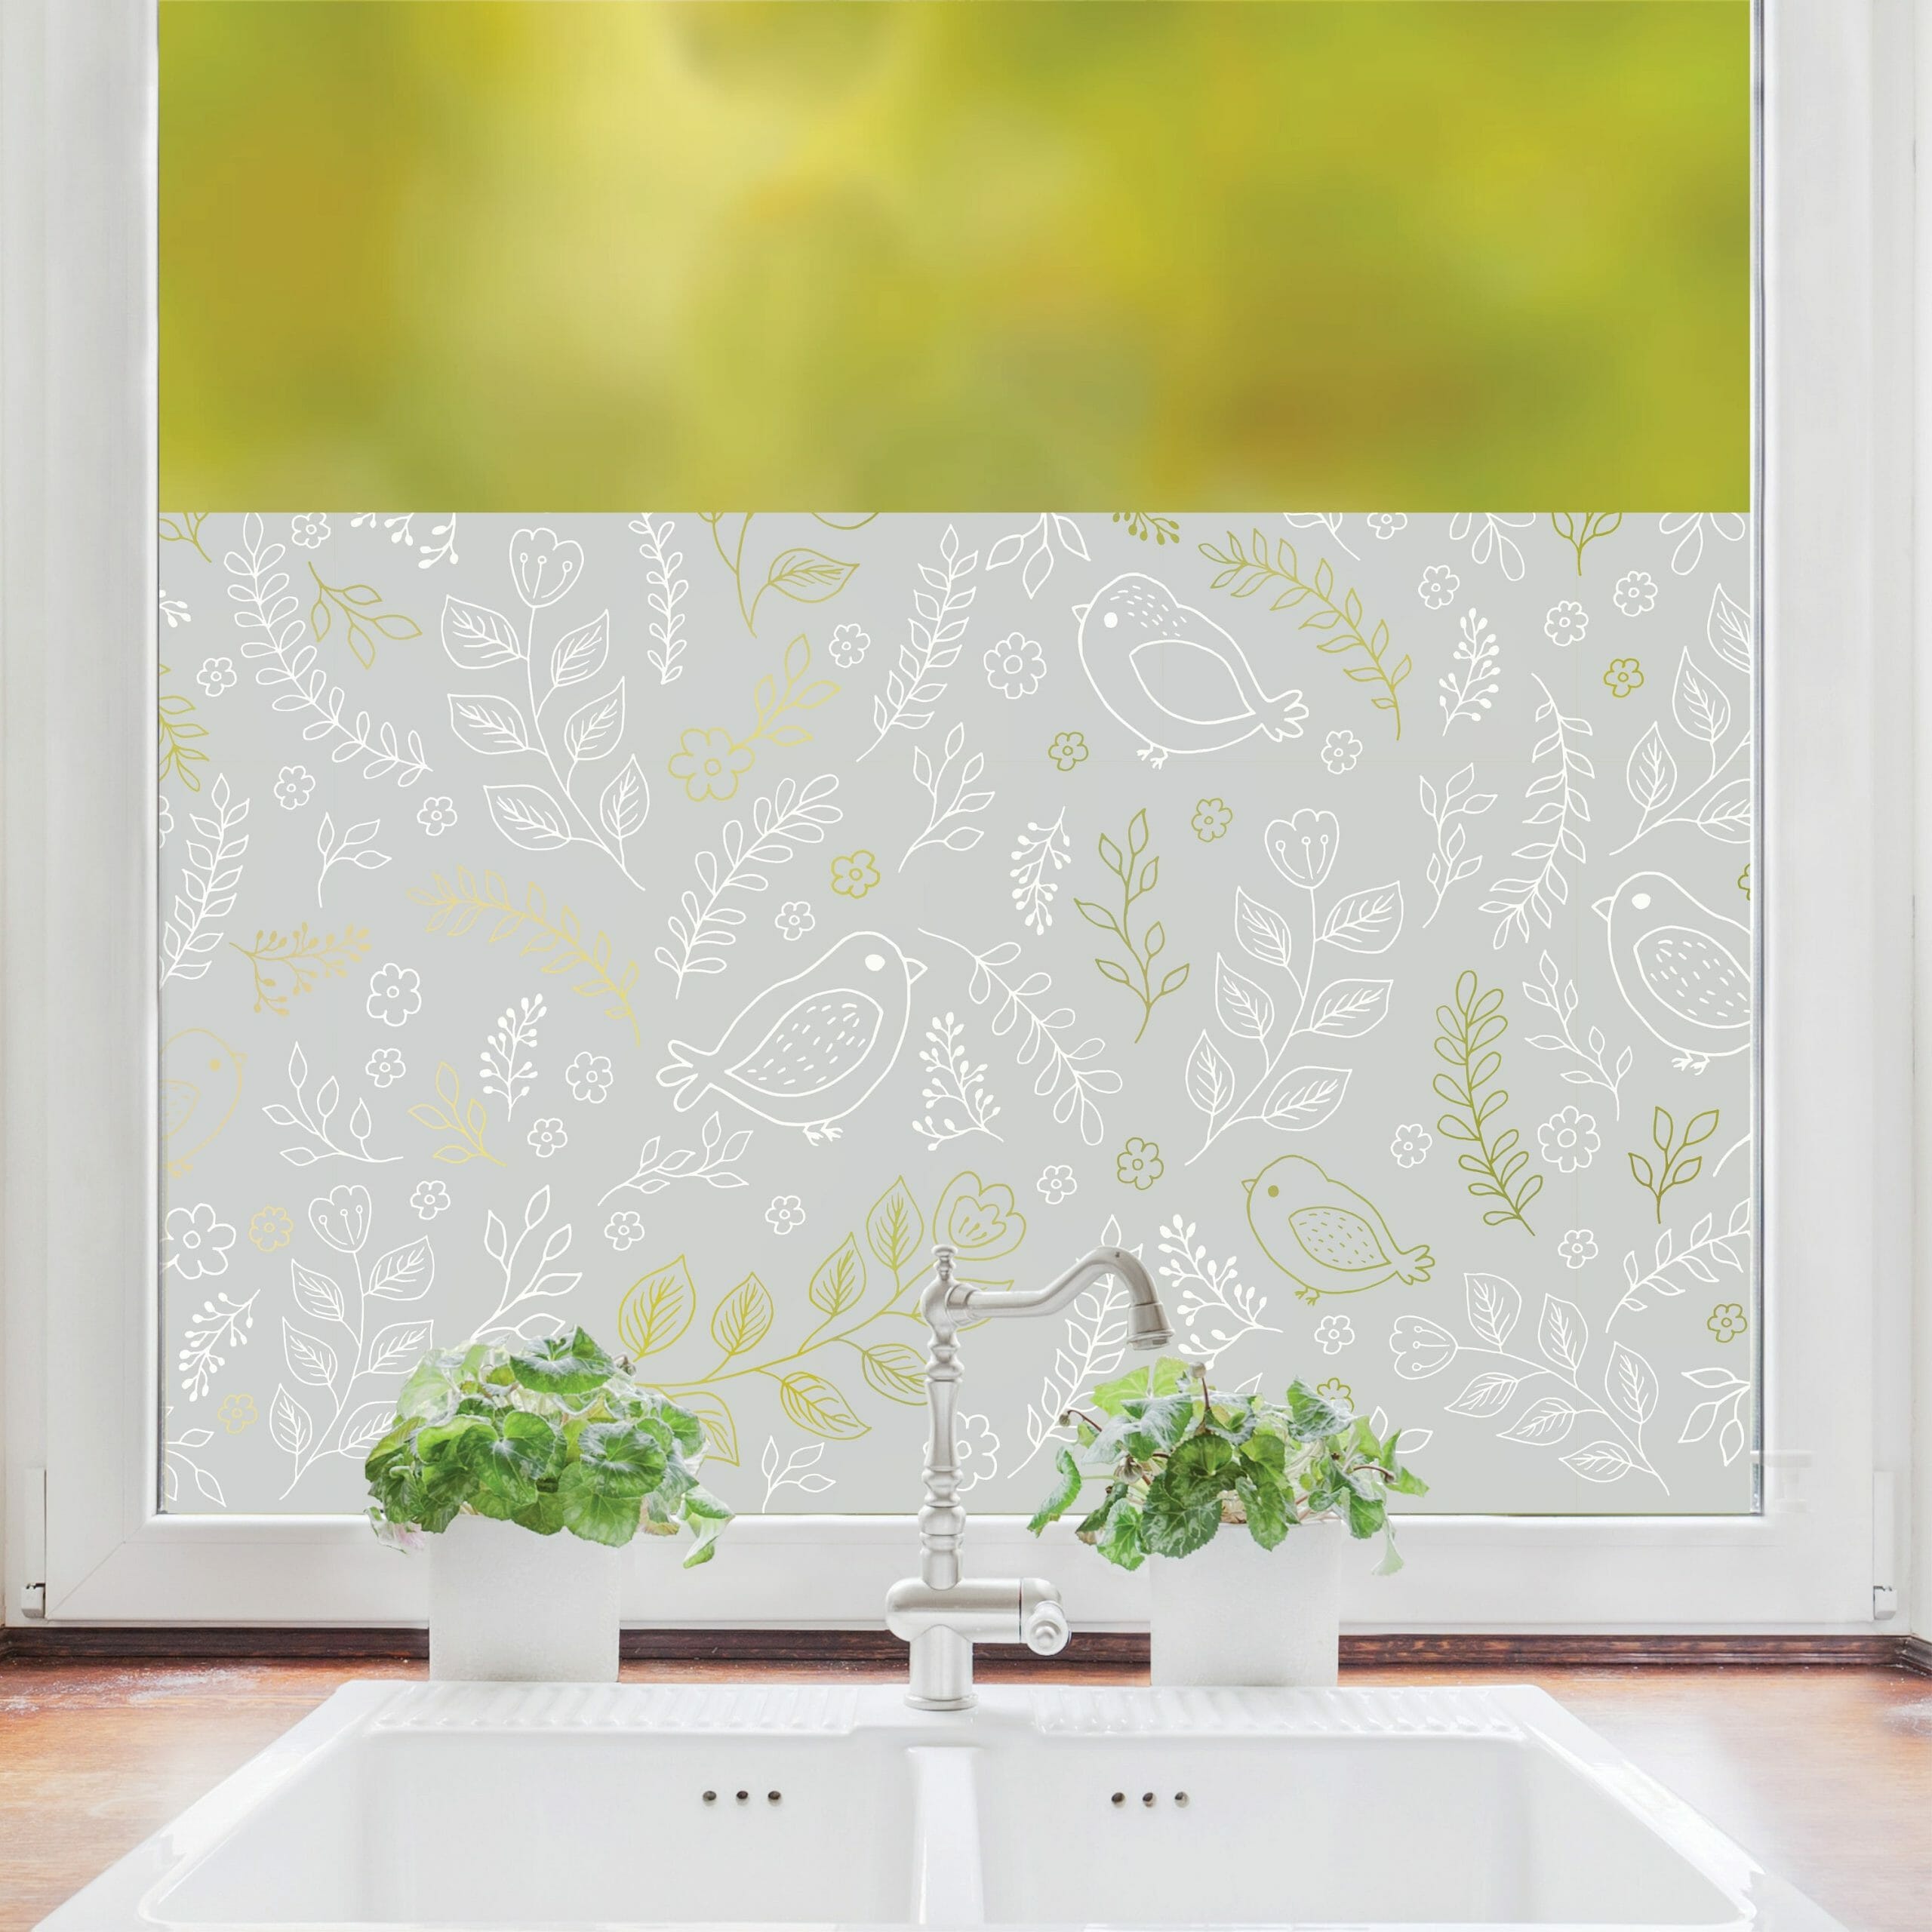 Sichtschutzfolie weiße Vögel und Blumen, teilweise durchsichtig Fensterfolie Fensterdeko Milchglasfolie, Kinderzimmer